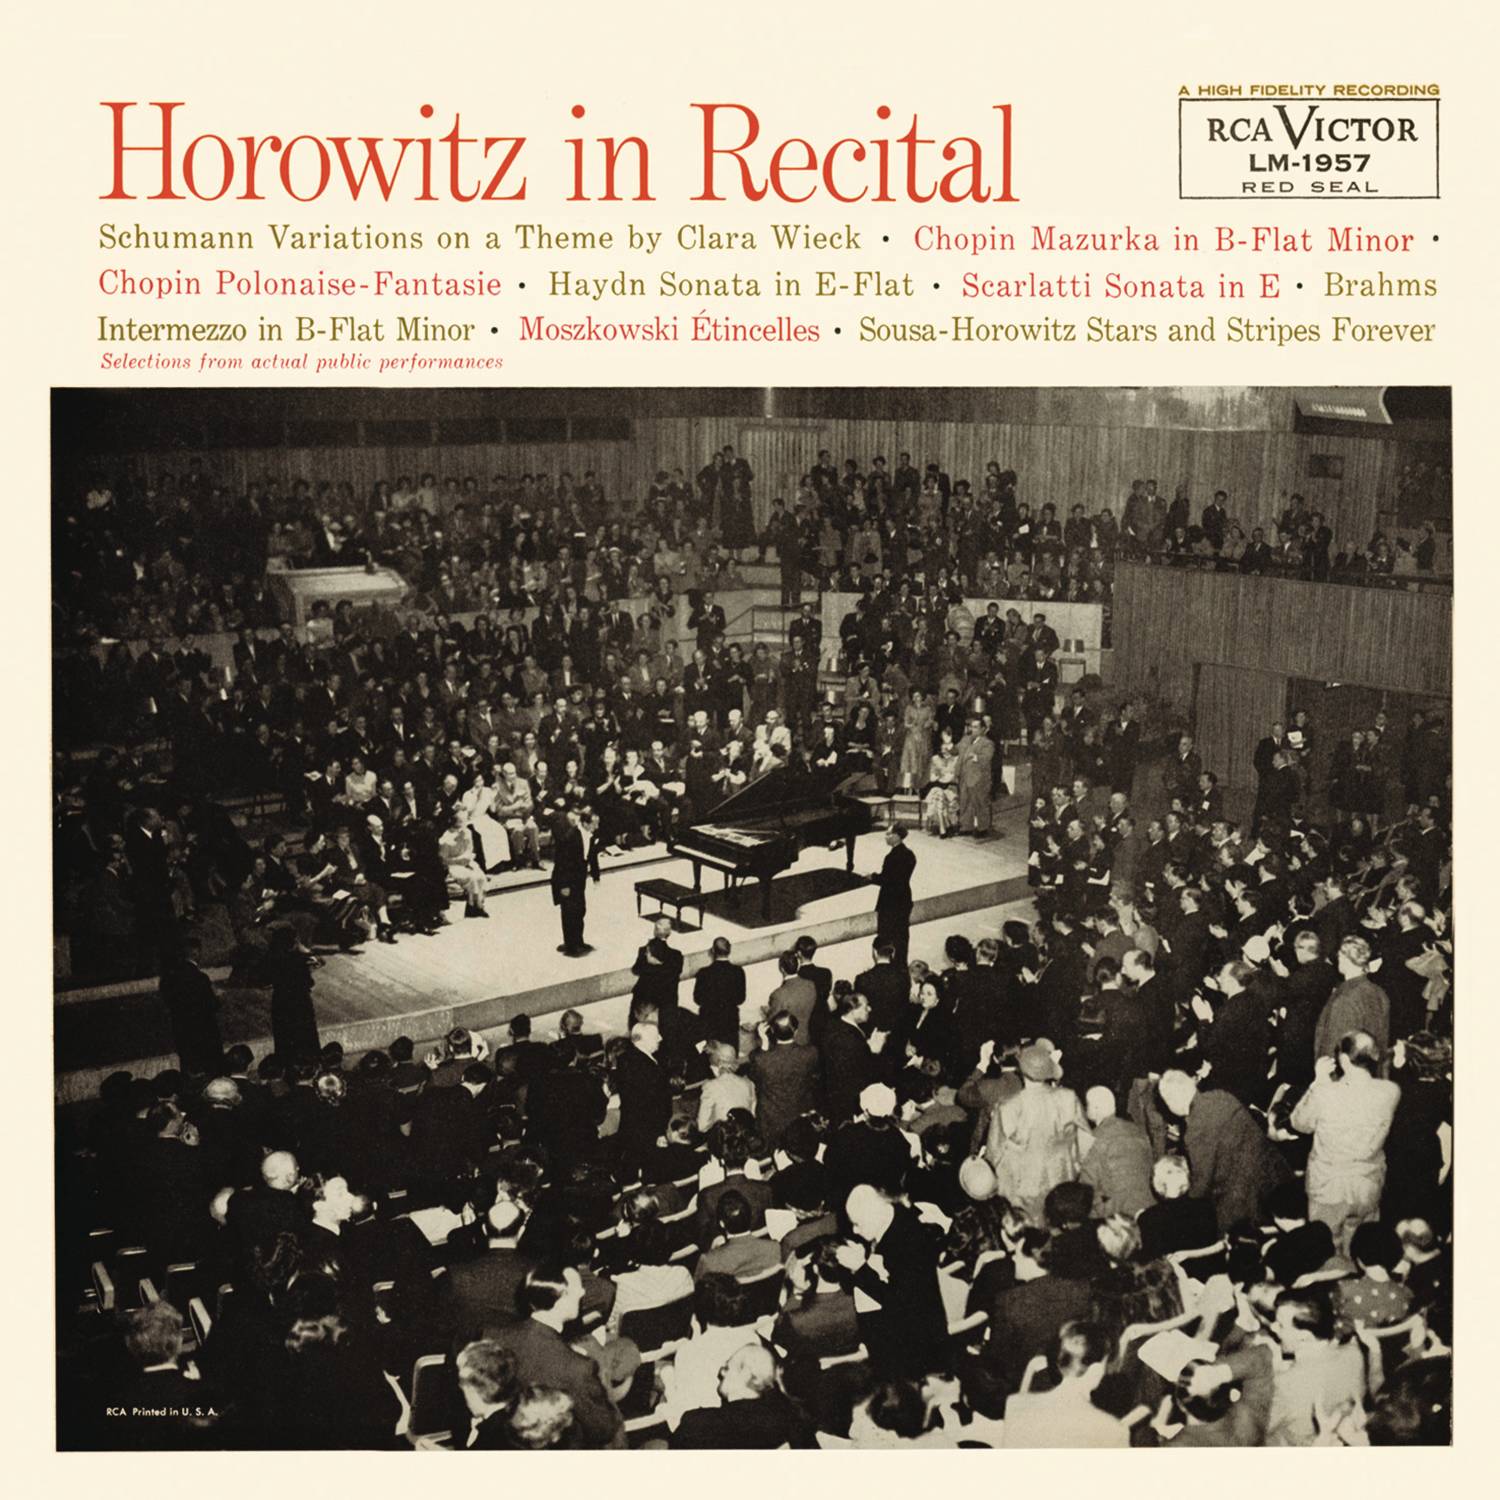 Horowitz in Recital